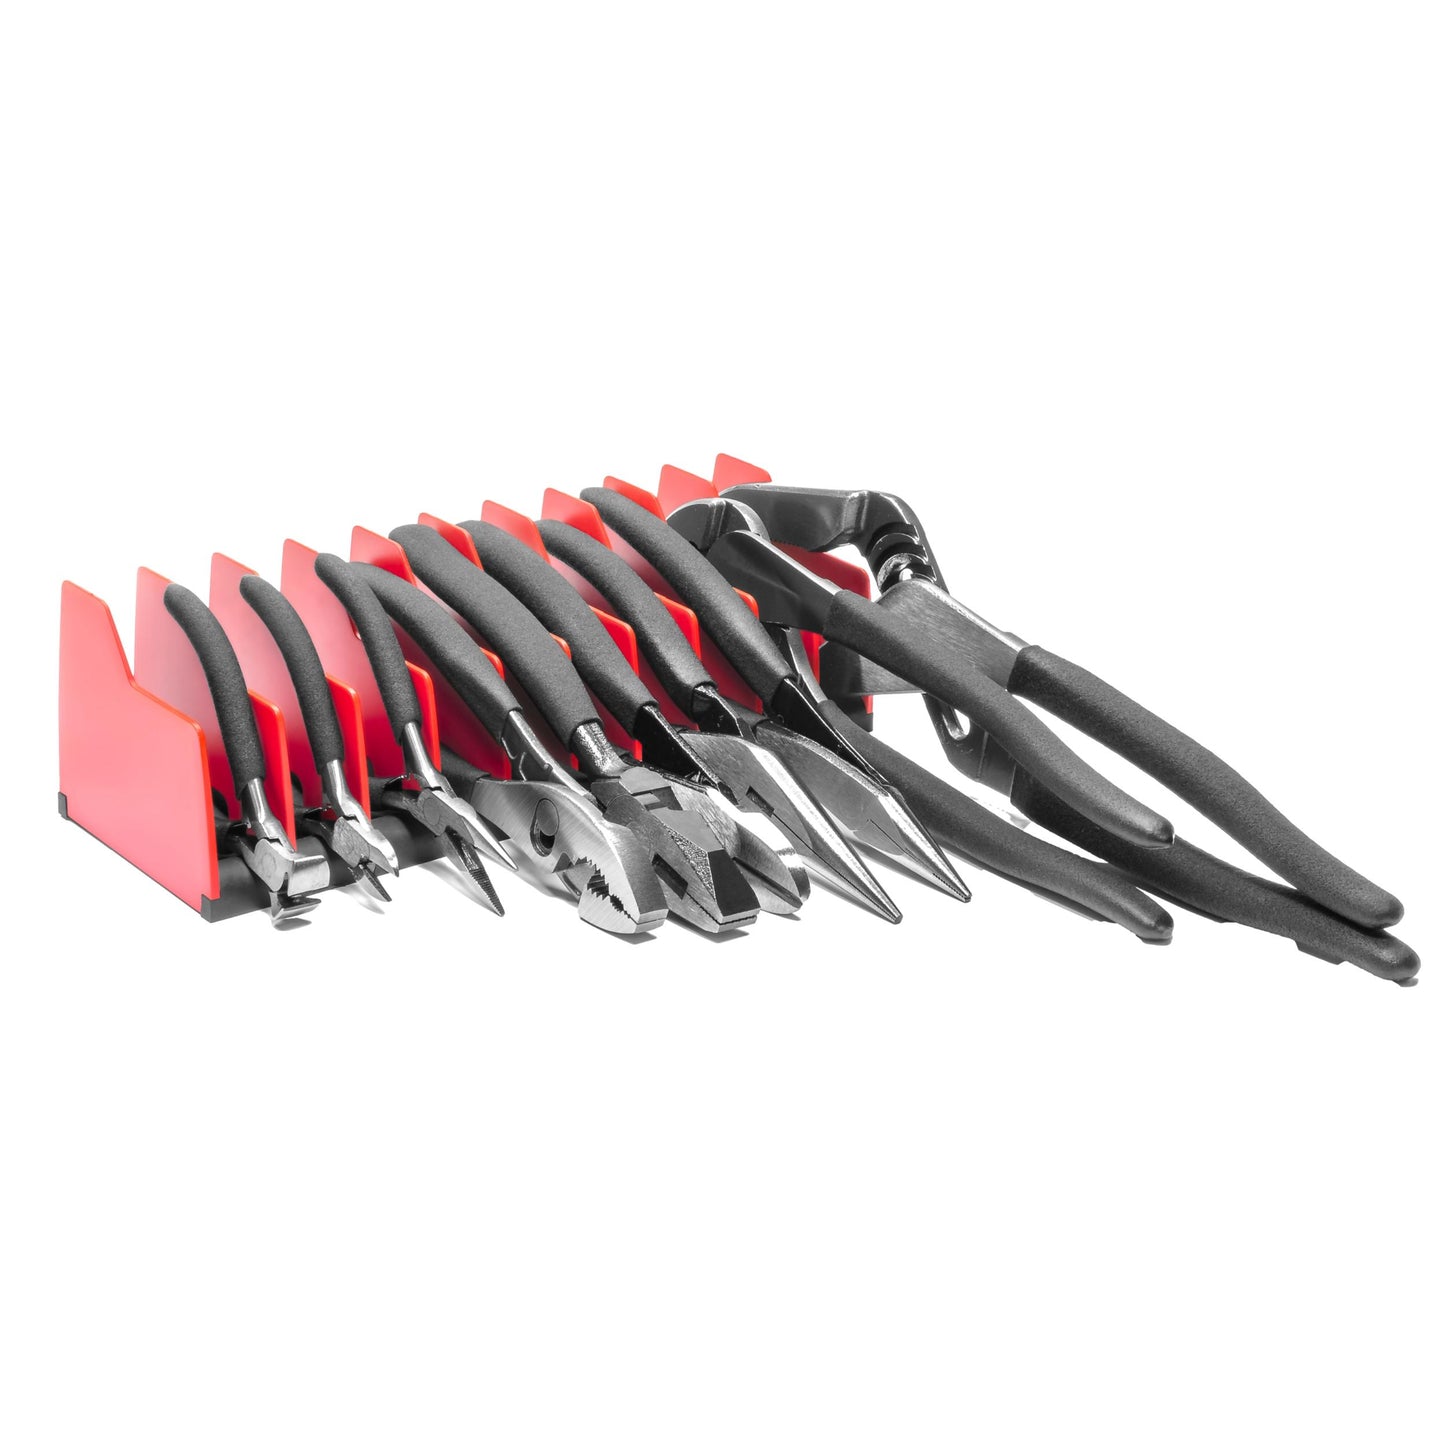 Ernst 10 Tool Plier Pro® Organiser Storage Red 5500